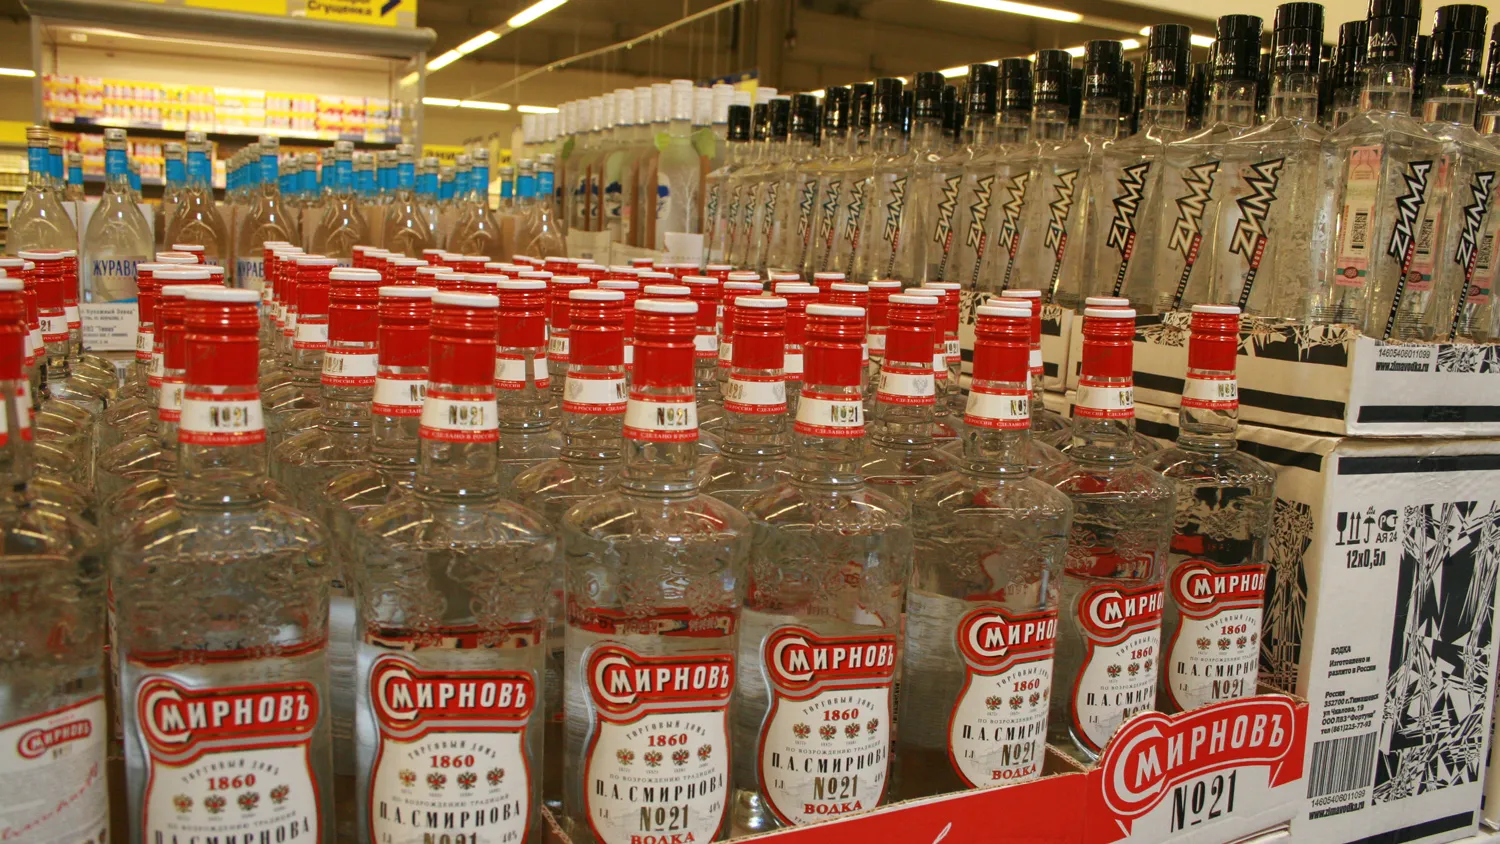 Выявлены злоупотребления на белгородском рынке алкоголя 